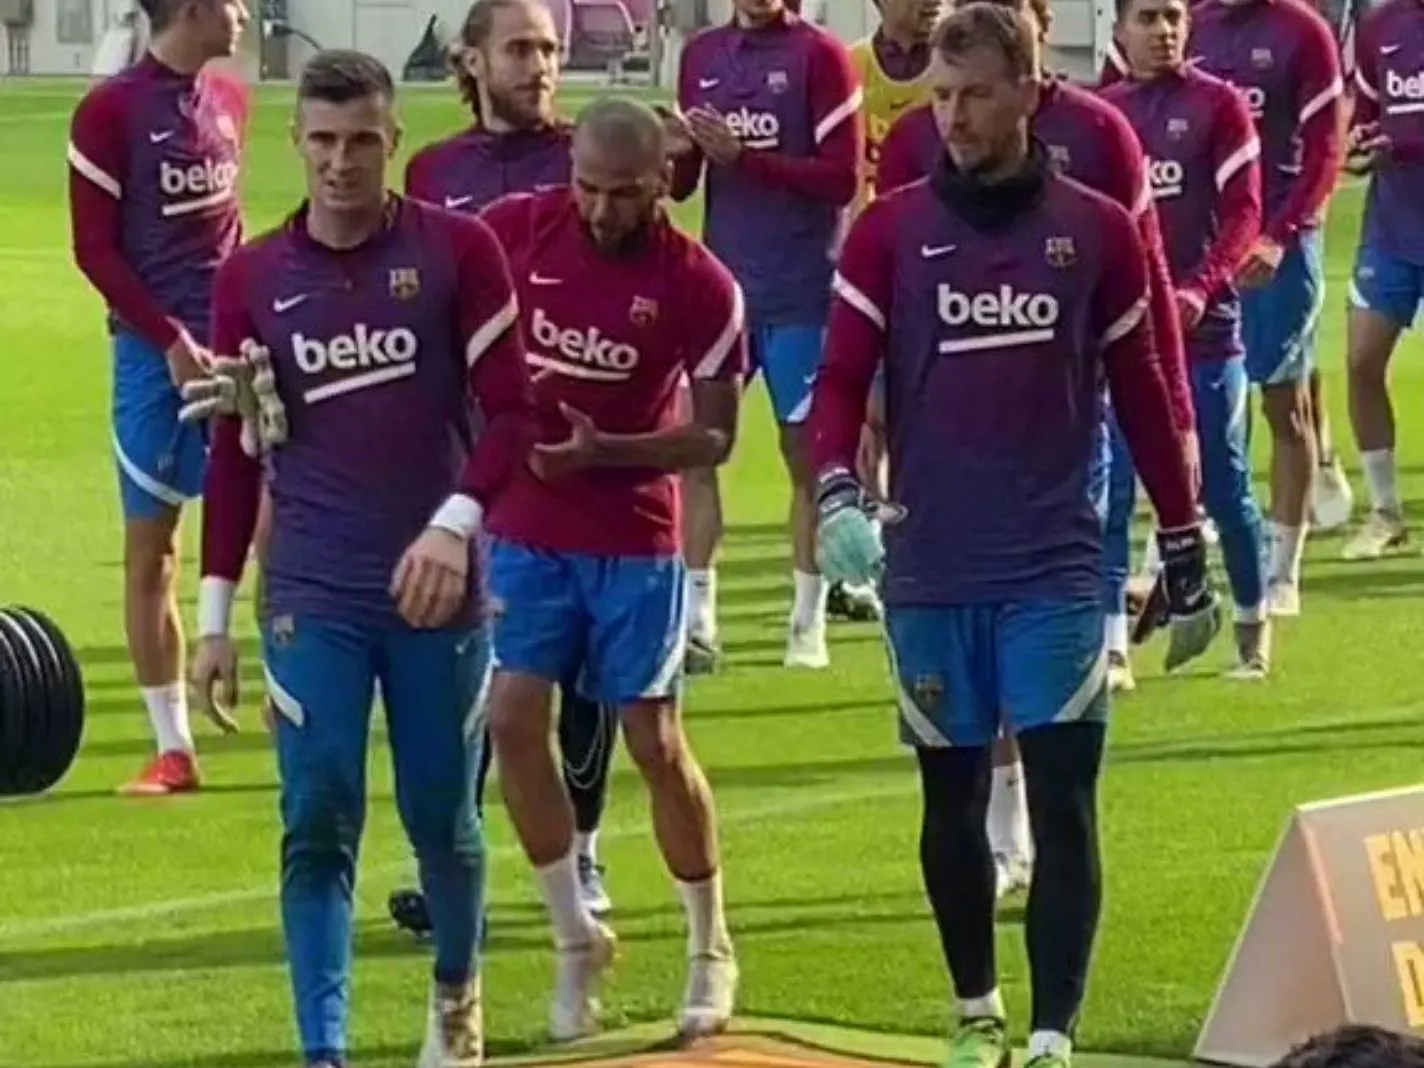 Dani Alves avoids walking over the Barcelona crest